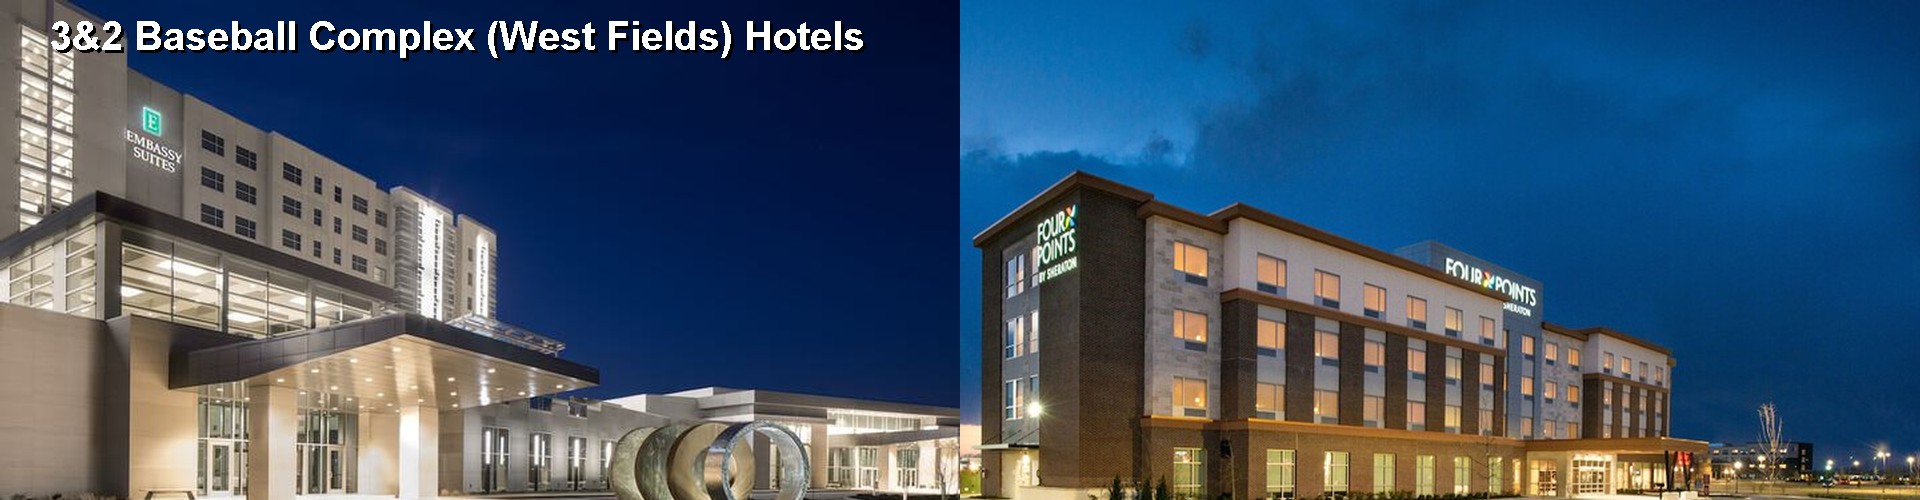 5 Best Hotels near 3&2 Baseball Complex (West Fields)